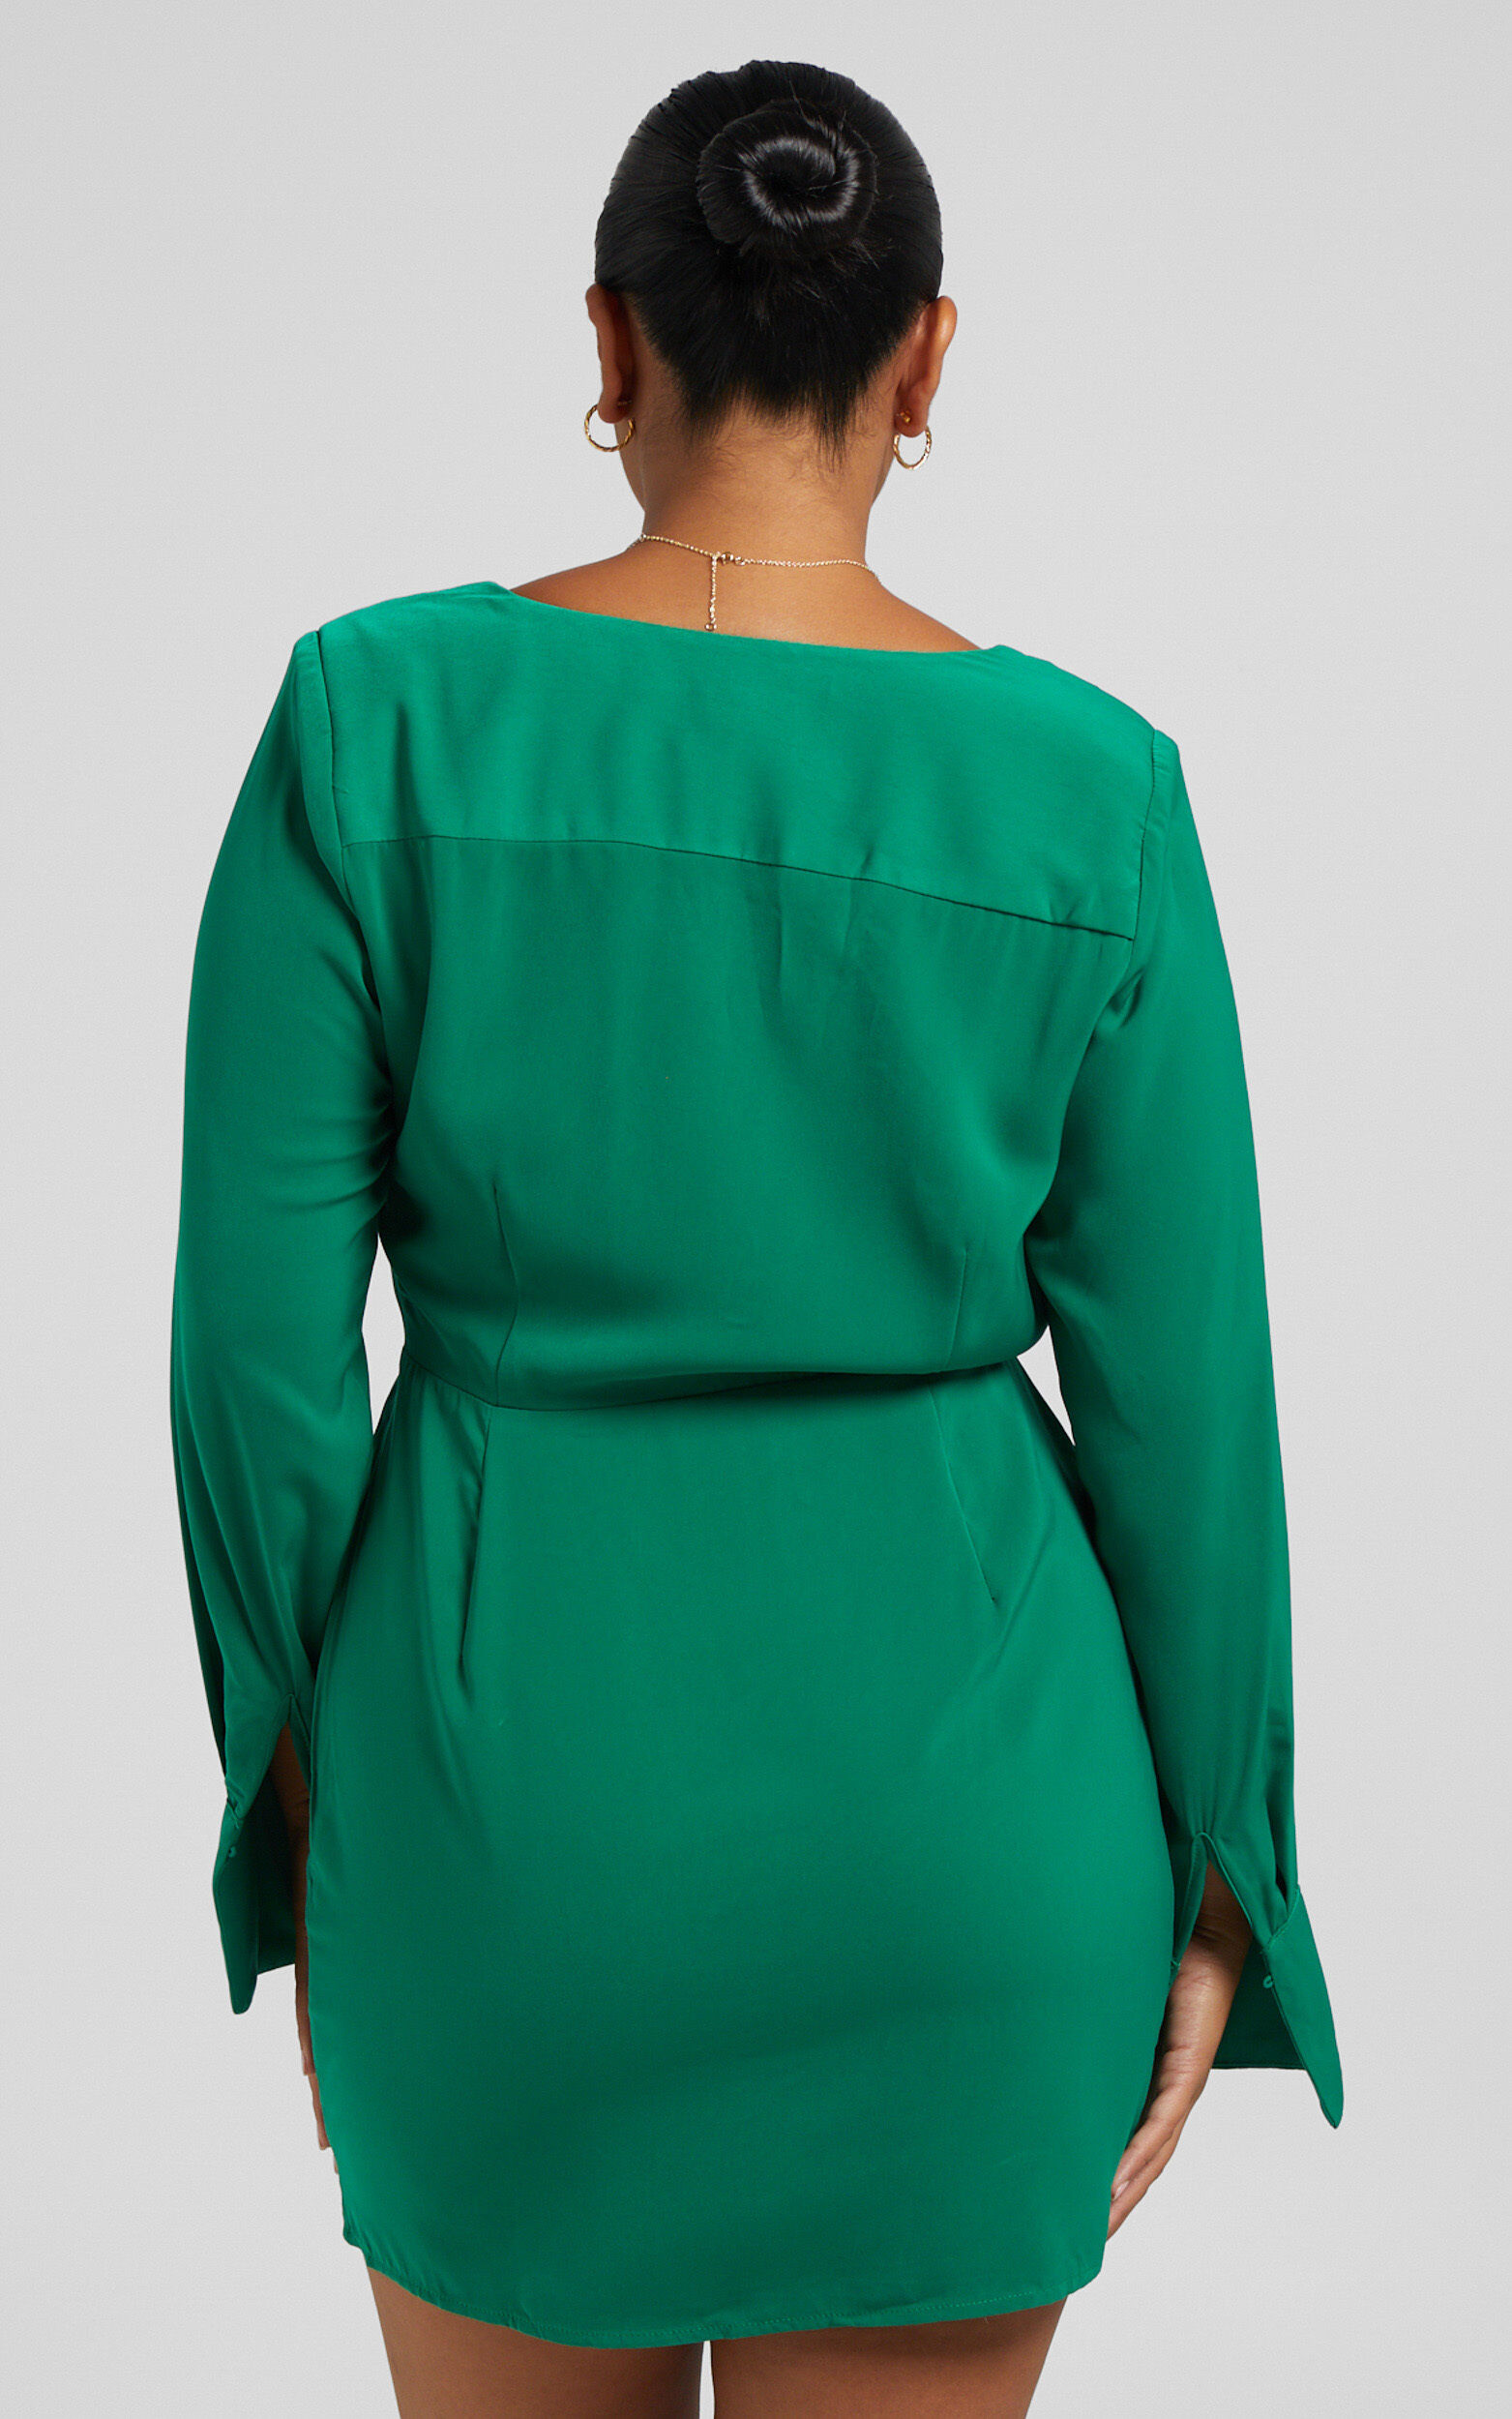 Runaway The Label - Lorenne Mini Dress in Emerald | Showpo